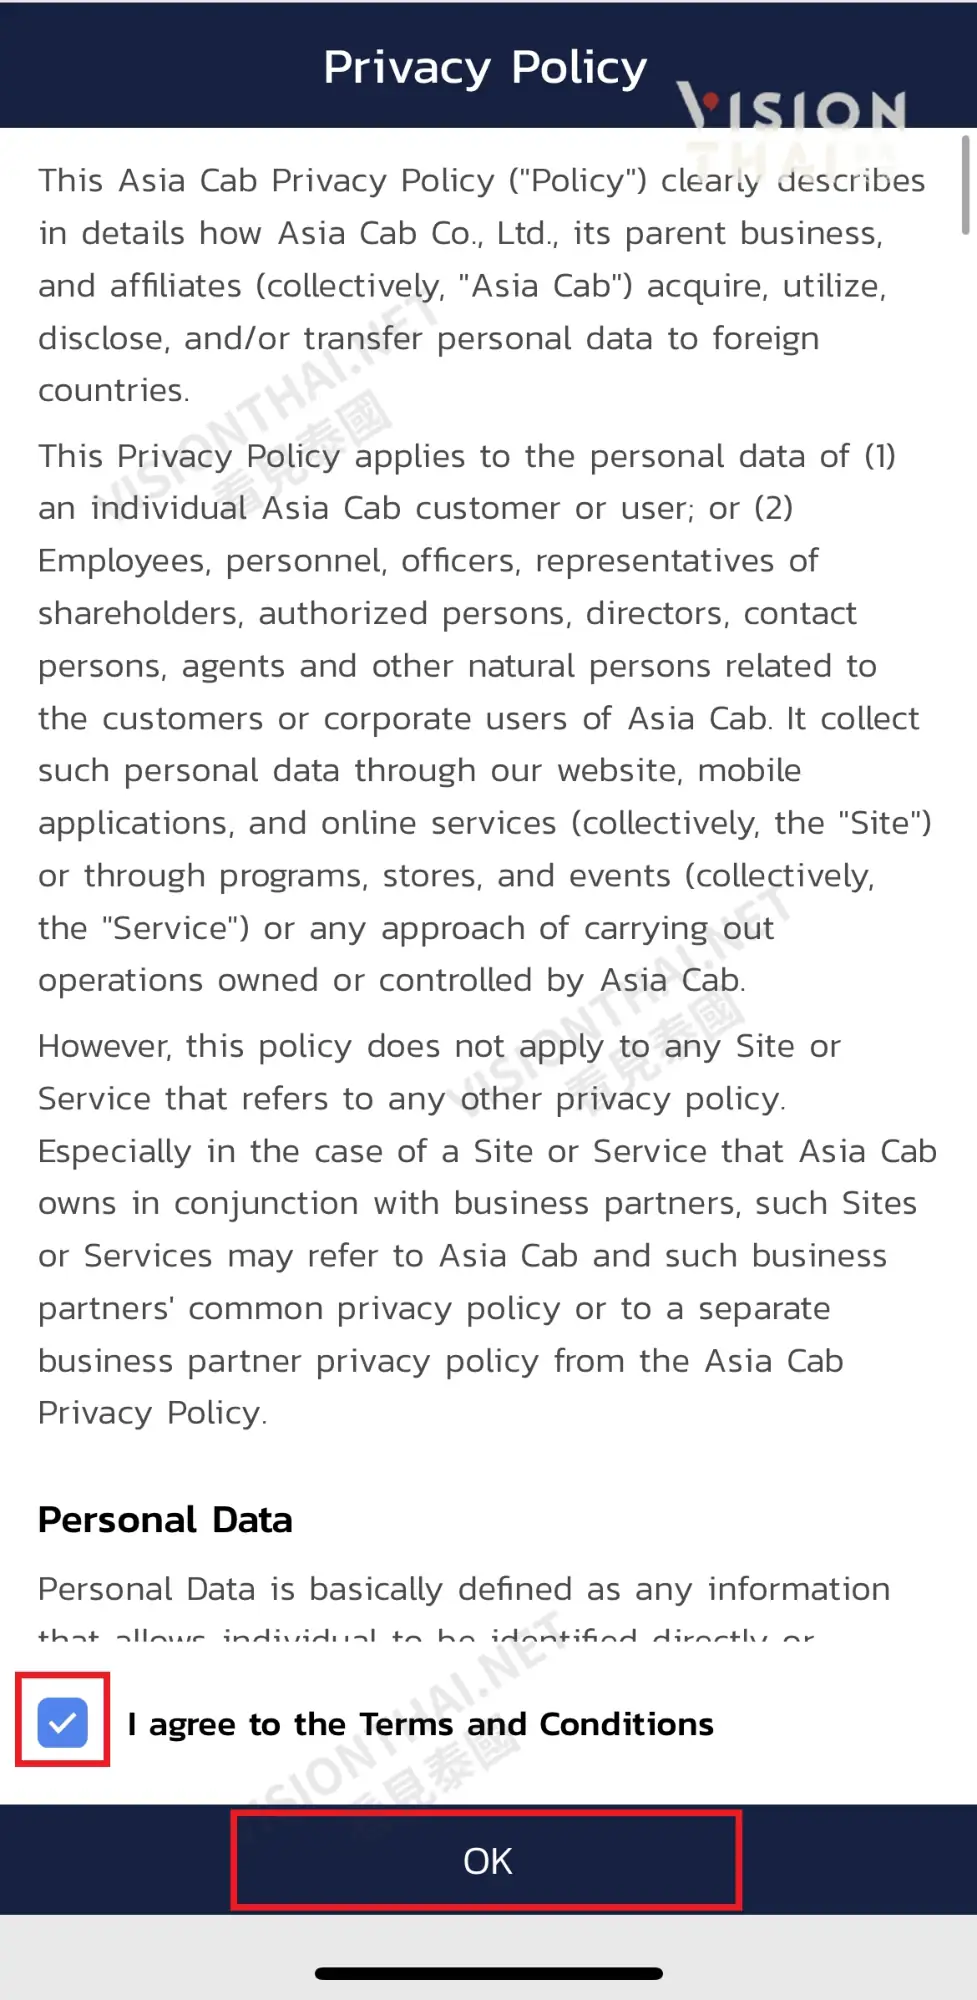 泰國叫車App CABB使用教學（圖片來源：Vision Thai 看見泰國）